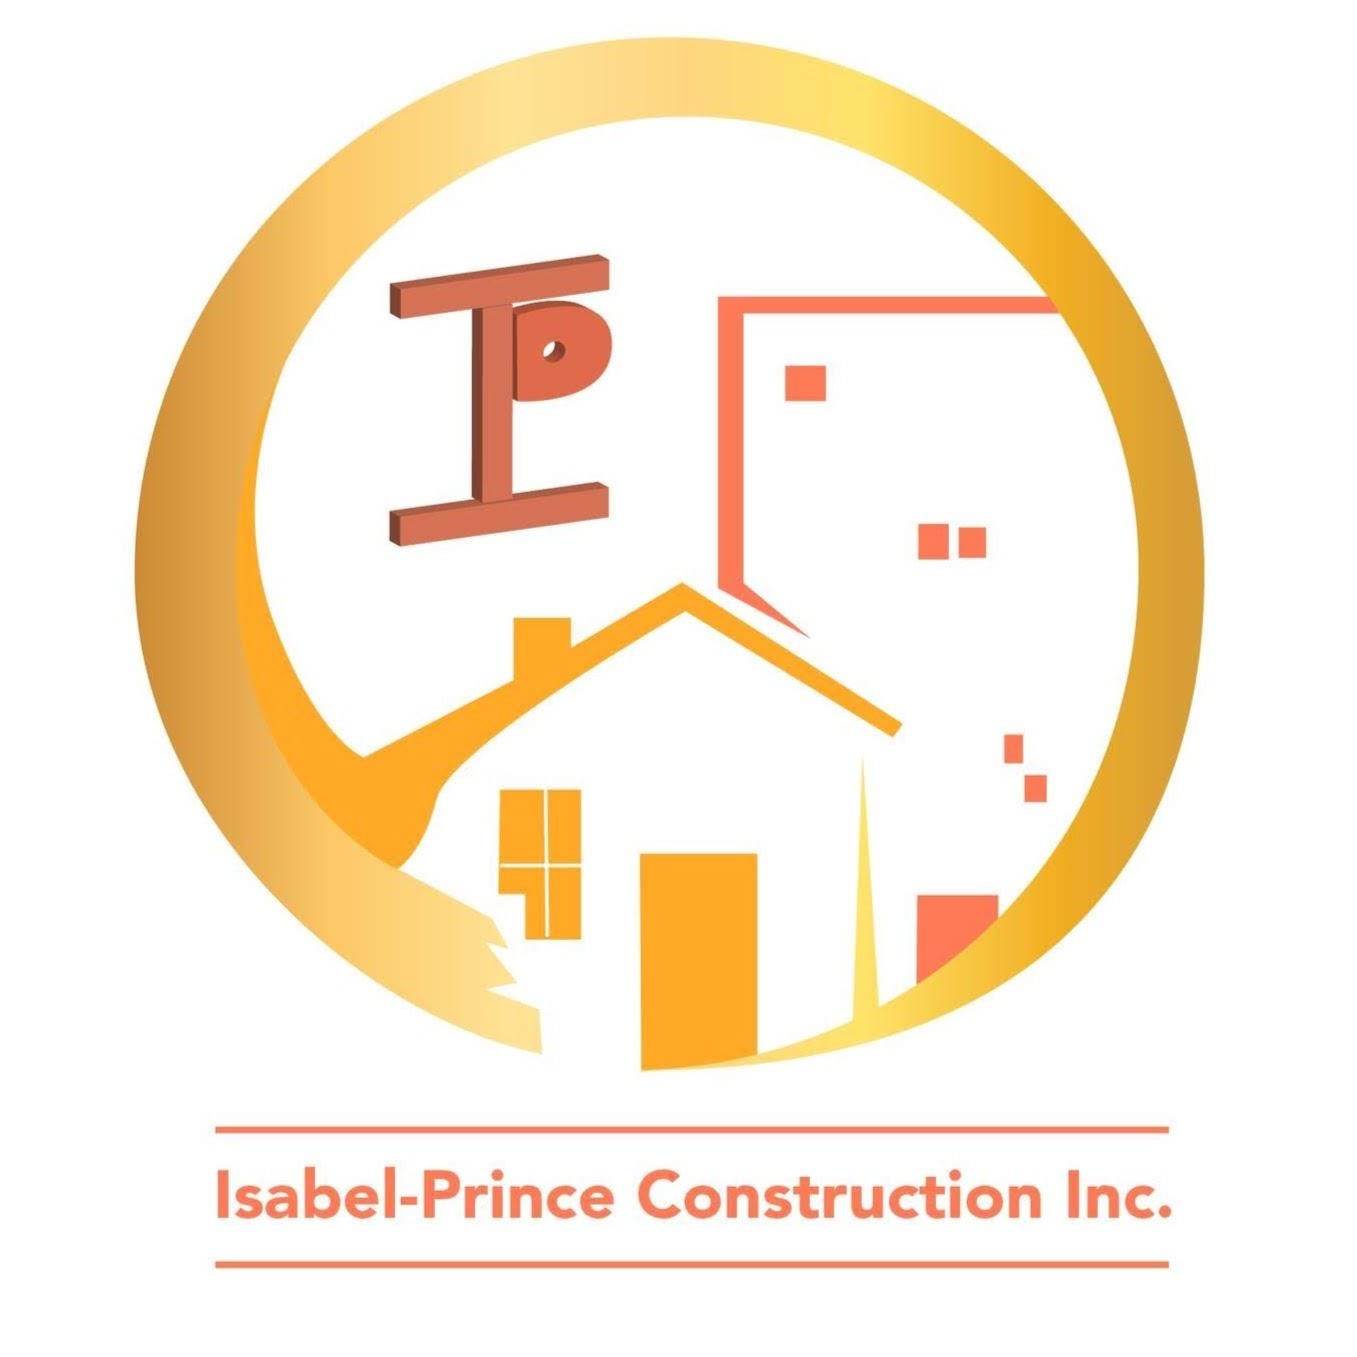 Isabel-Prince Construction Inc. - Rénovation Salle de bain - Saint-Eustache - Rénovations de salles de bains